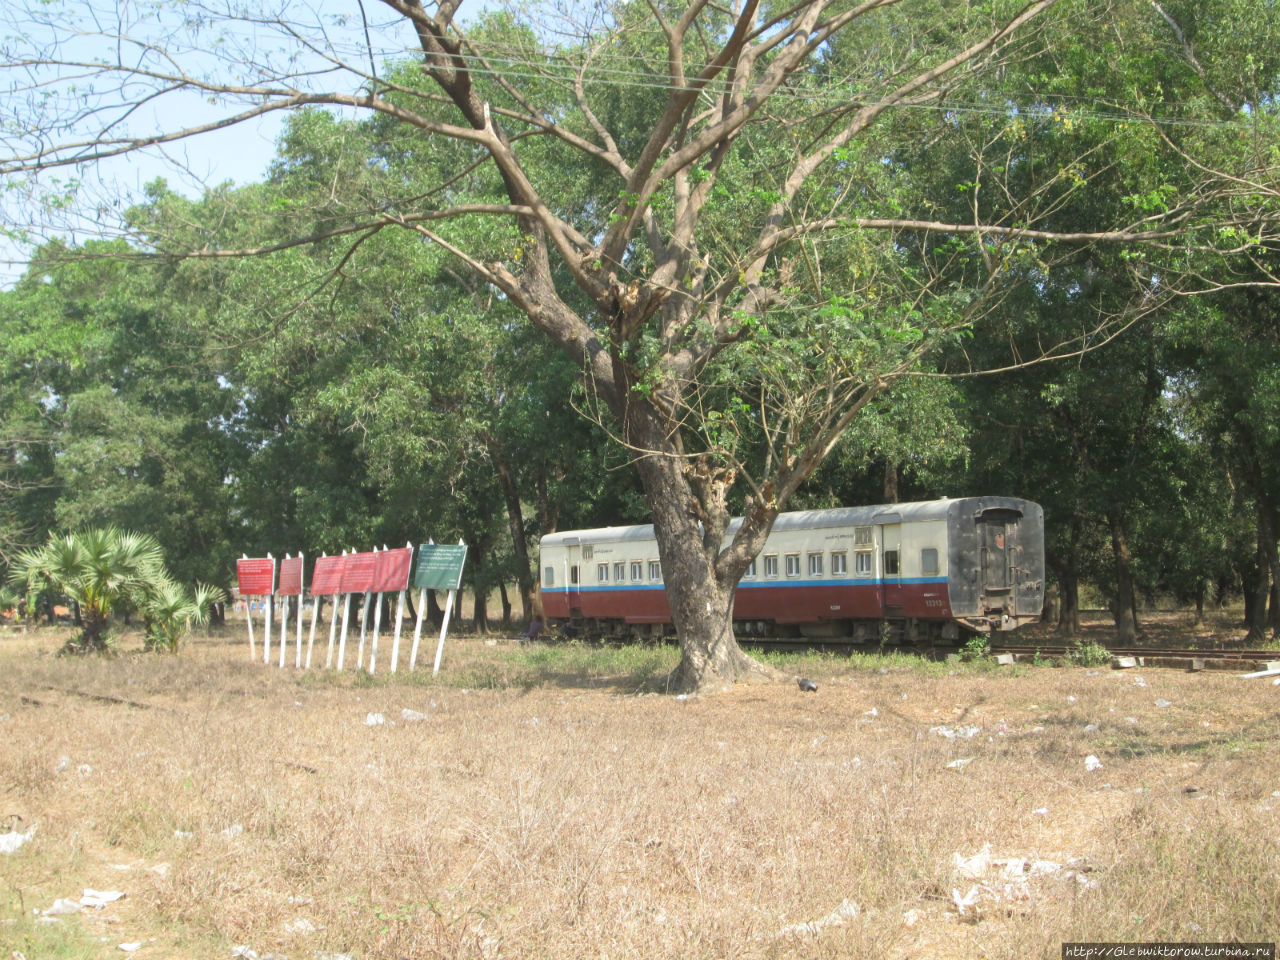 Визит на вокзал в рабочий день Патейн, Мьянма